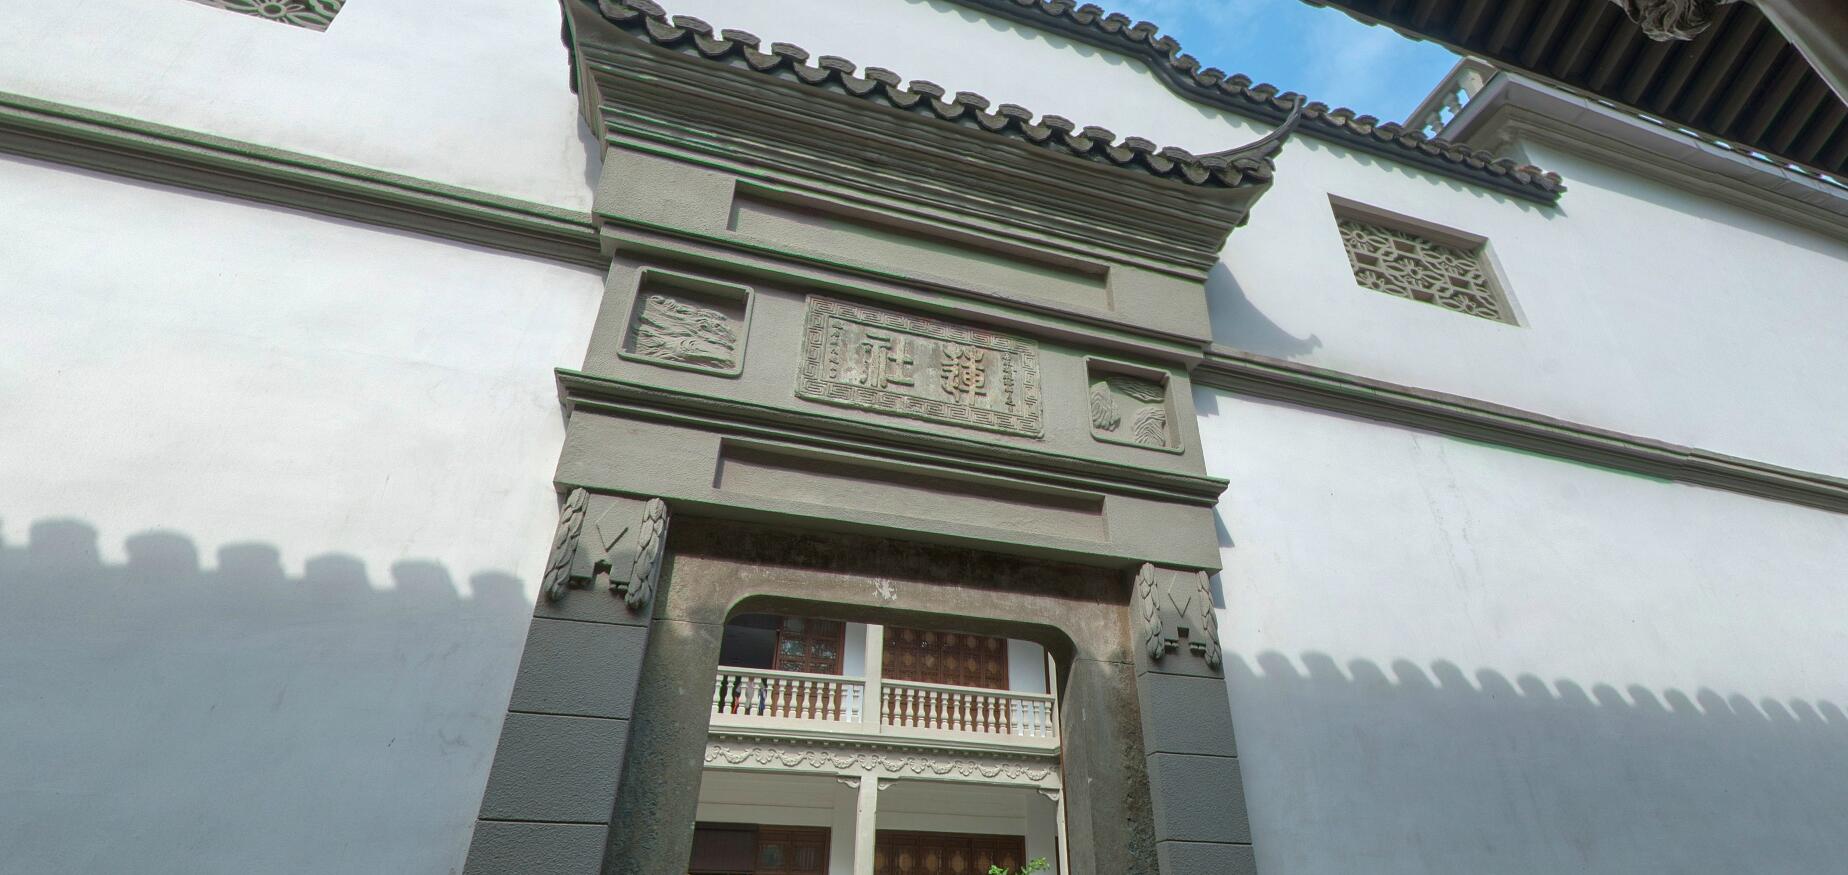 菩提精舍- 建筑漫步- 杭州市文物遗产与历史建筑保护中心